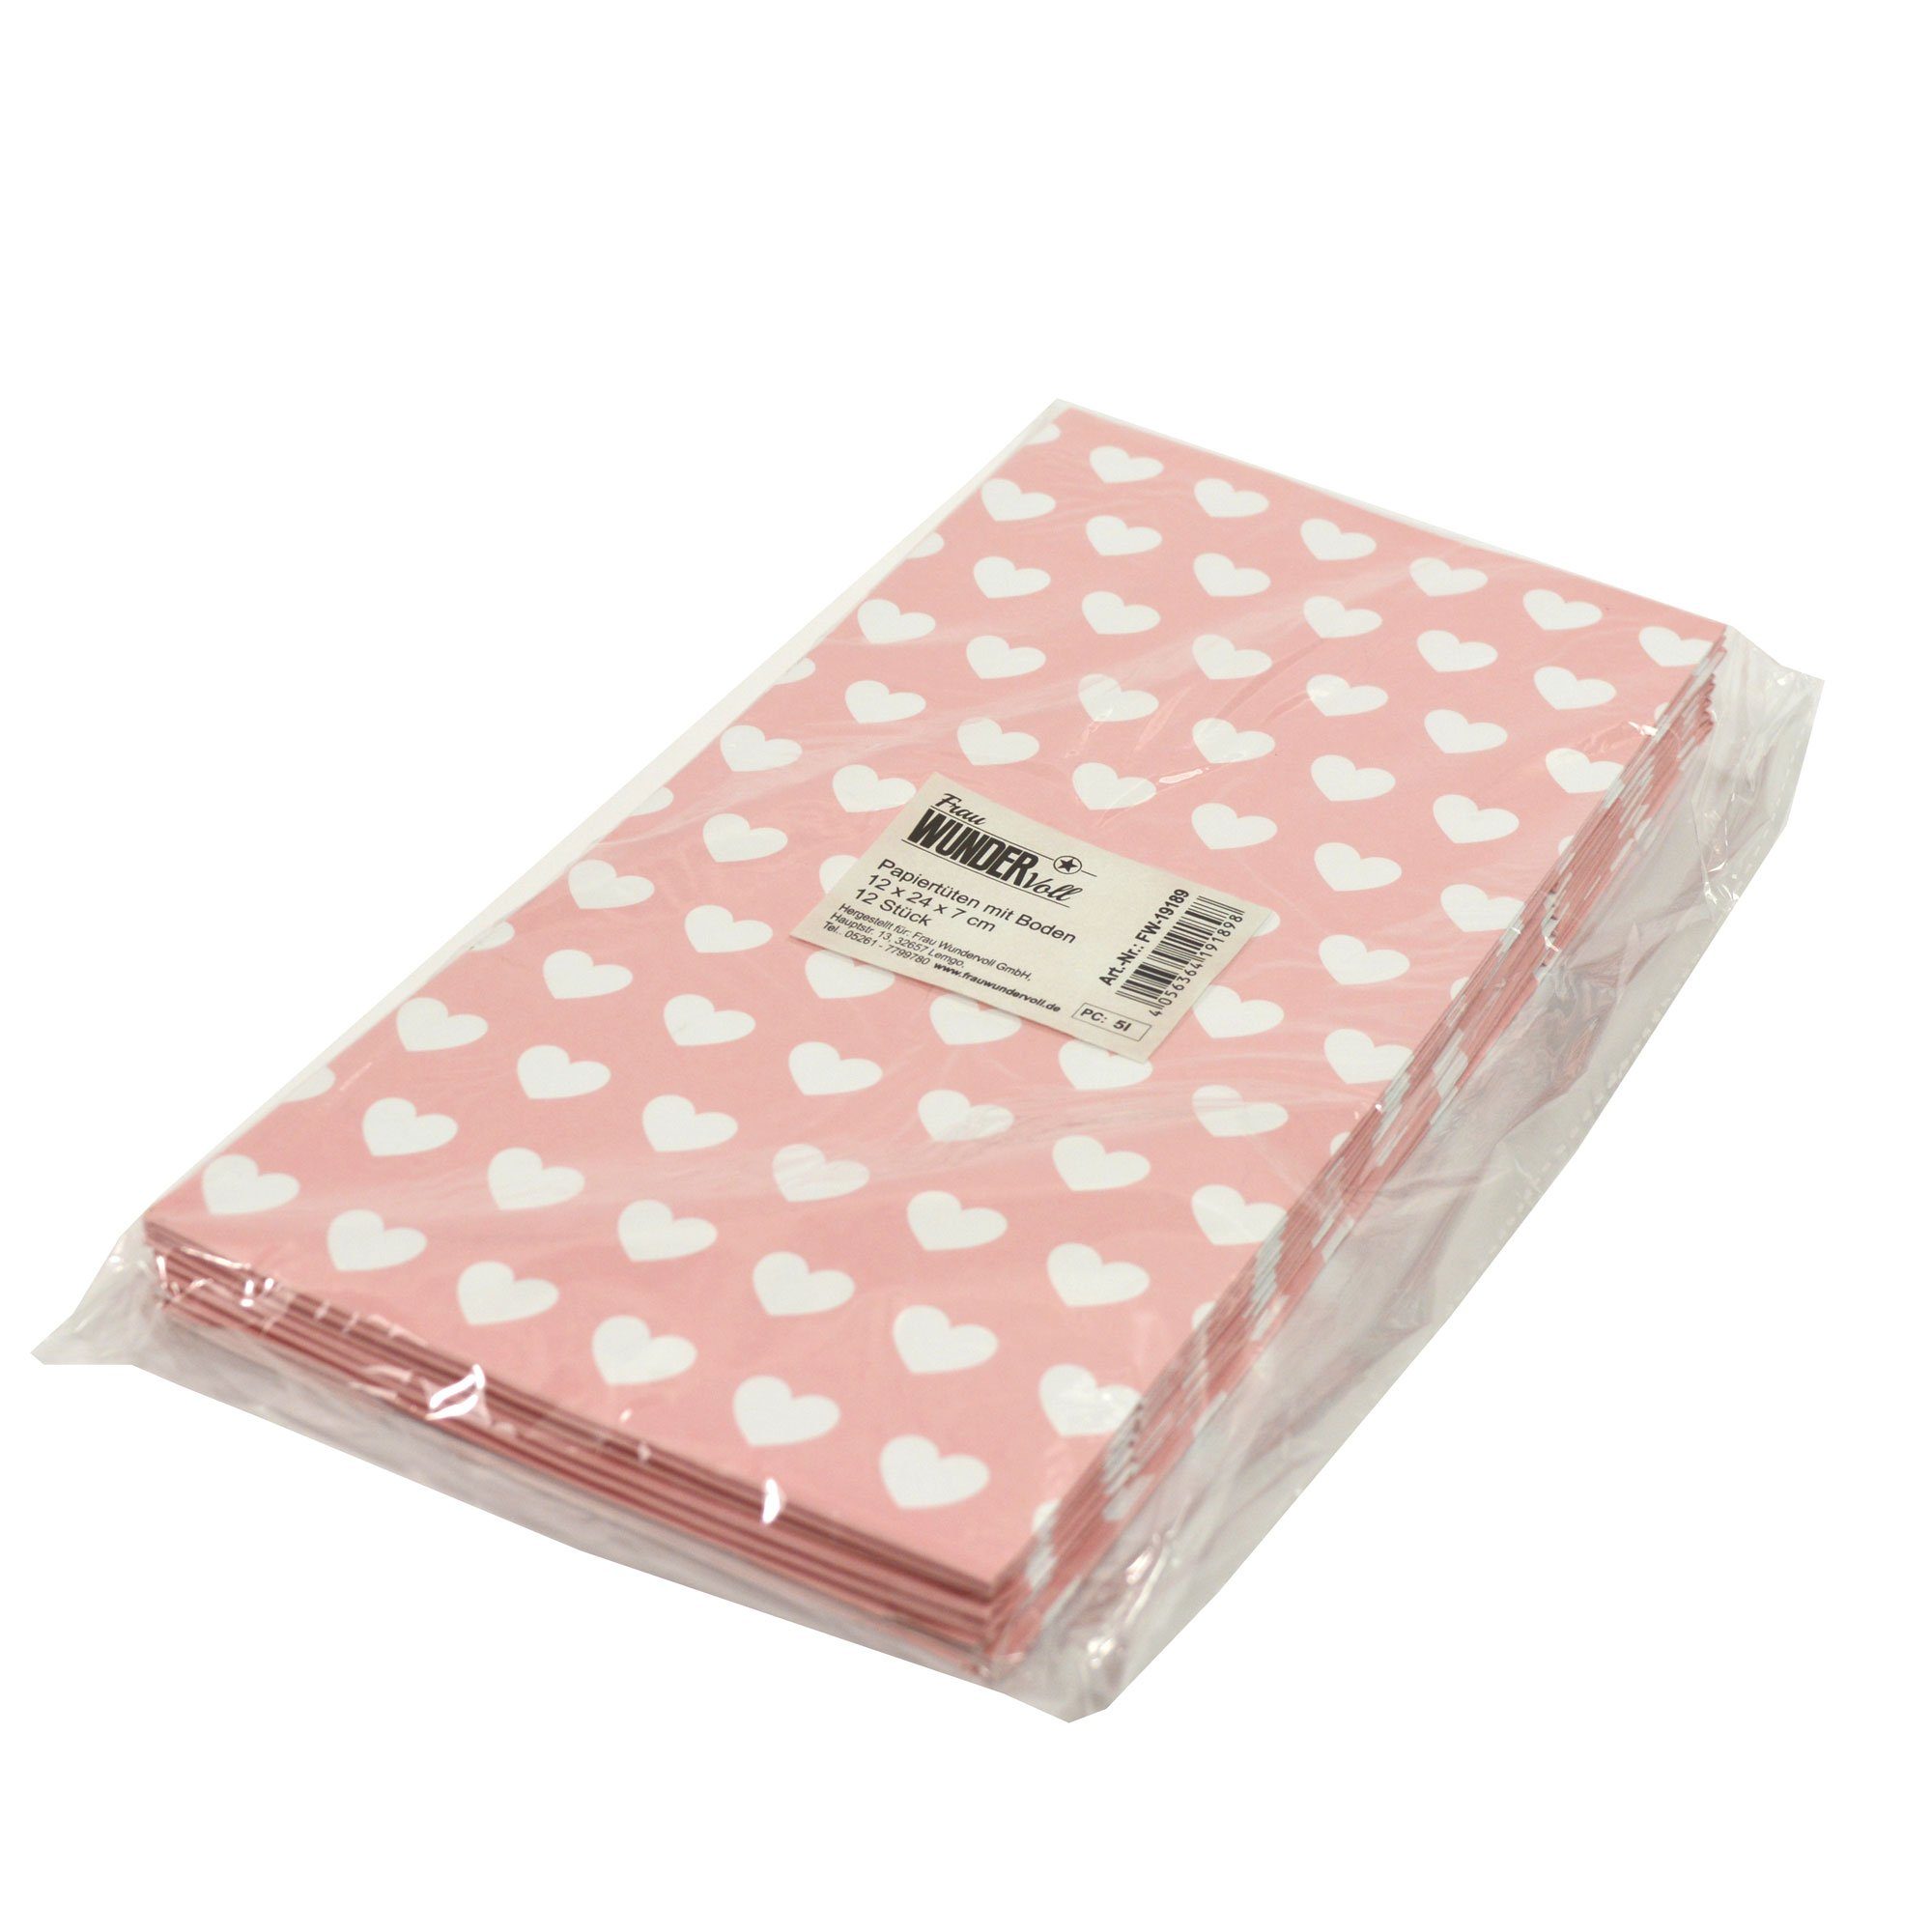 Boden, Frau WUNDERVoll 100g Papiertüten rosa, Herzen, weiße mit Papierdekoration